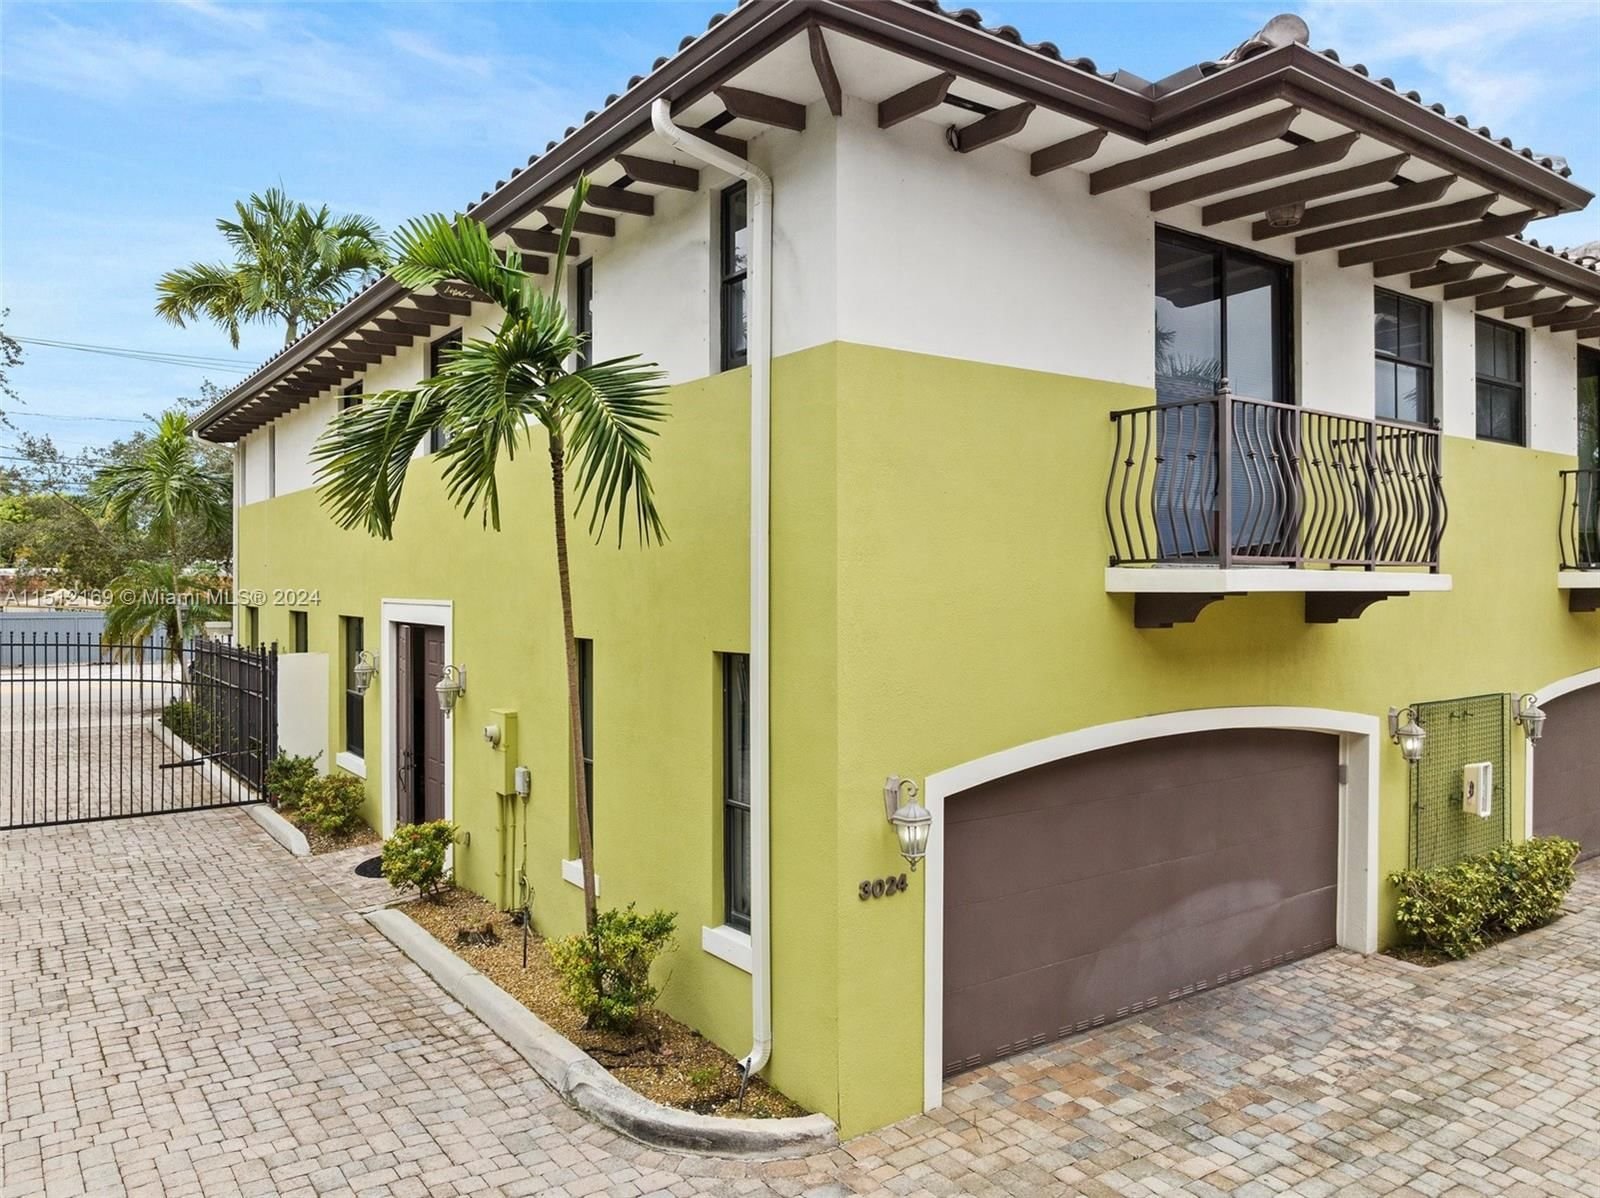 Real estate property located at 3024 Mcdonald St #1, Miami-Dade County, GROVE ENCLAVE CONDO, Miami, FL